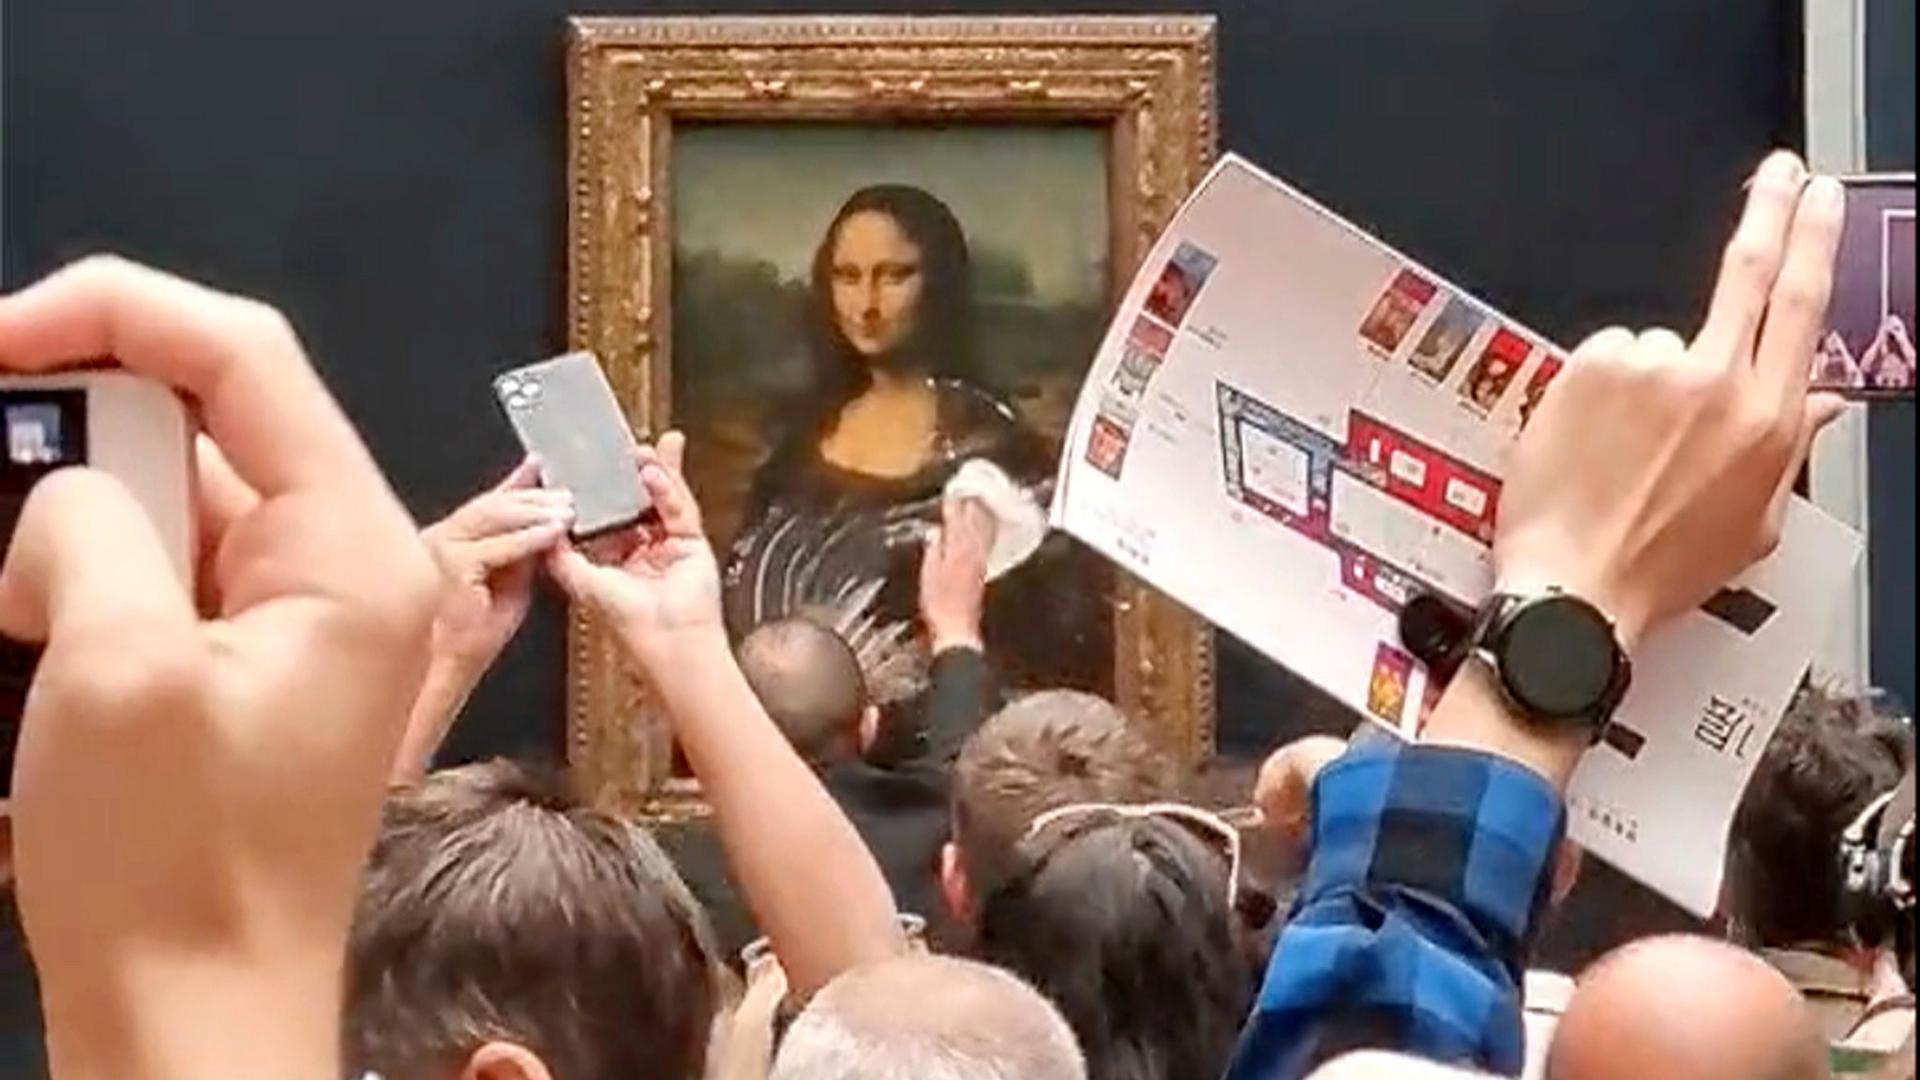 Das Gemälde von Leonardo da Vinci wurde mit einem Tortenstück beworfen – aber dabei glücklicherweise nicht beschädigt.